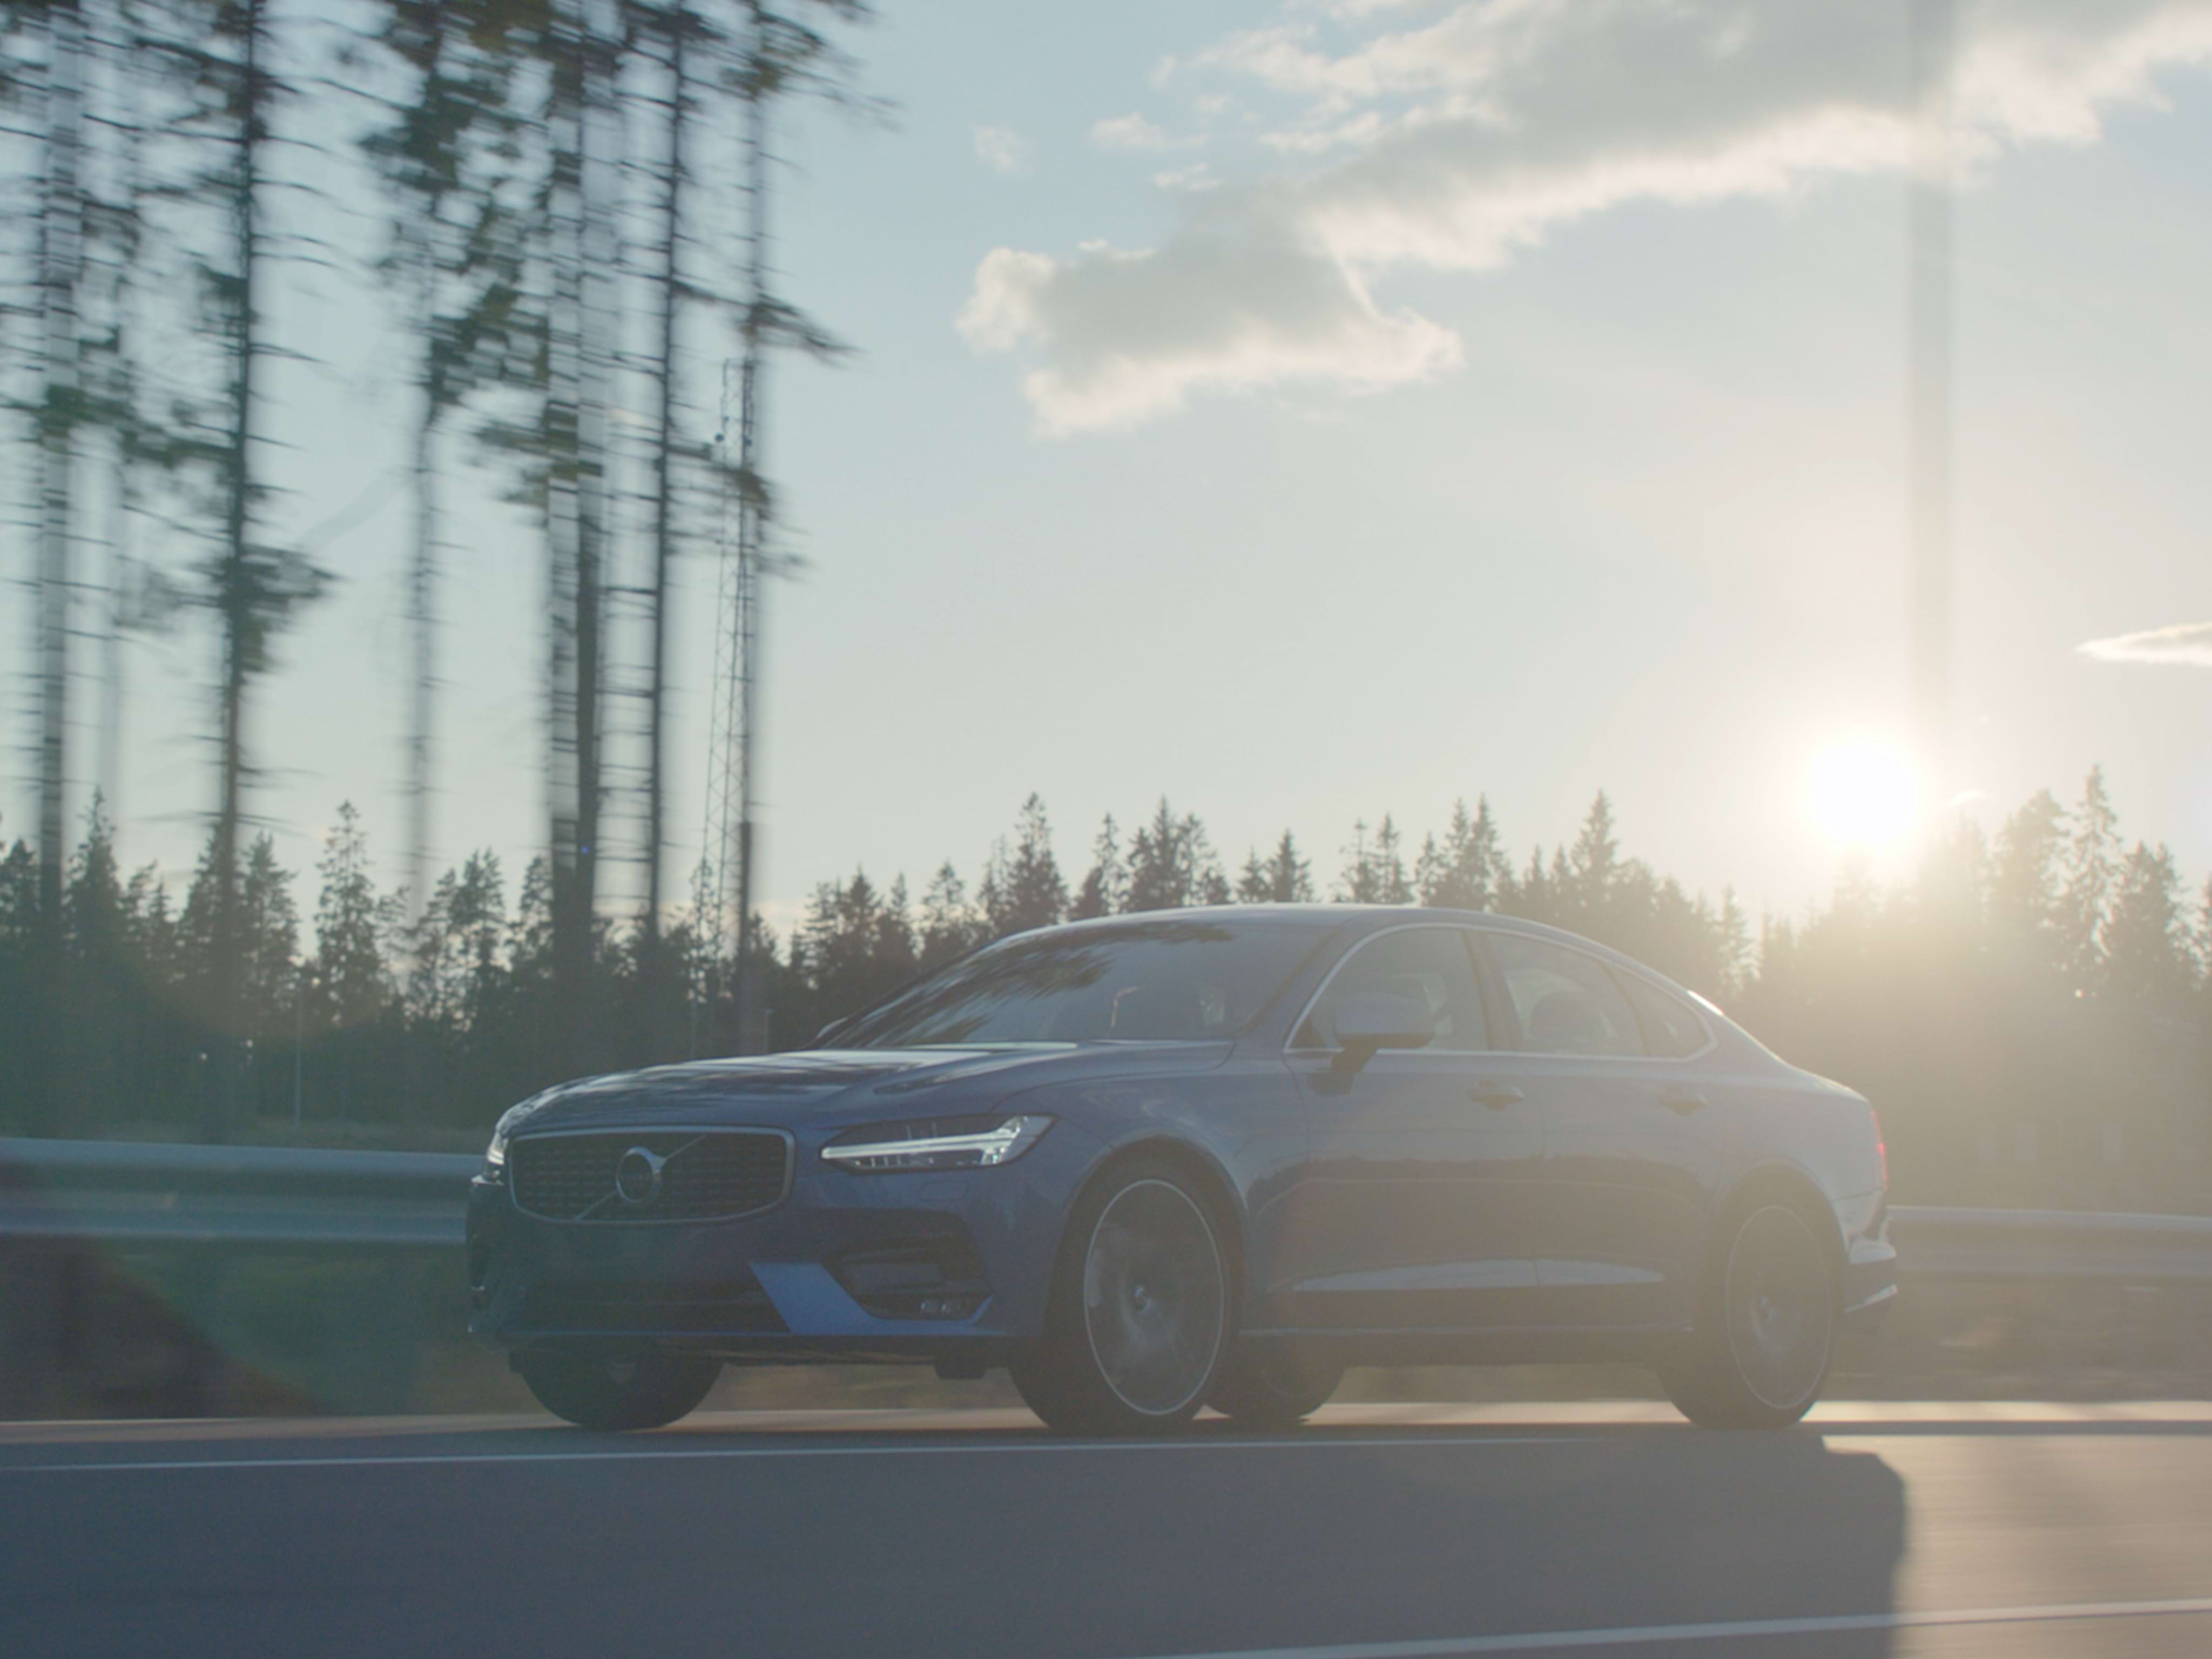 Denim kék Volvo S90 limuzin nagylátószögű felvételen, amint egy napsütéses délutánon egy erdős úton halad.